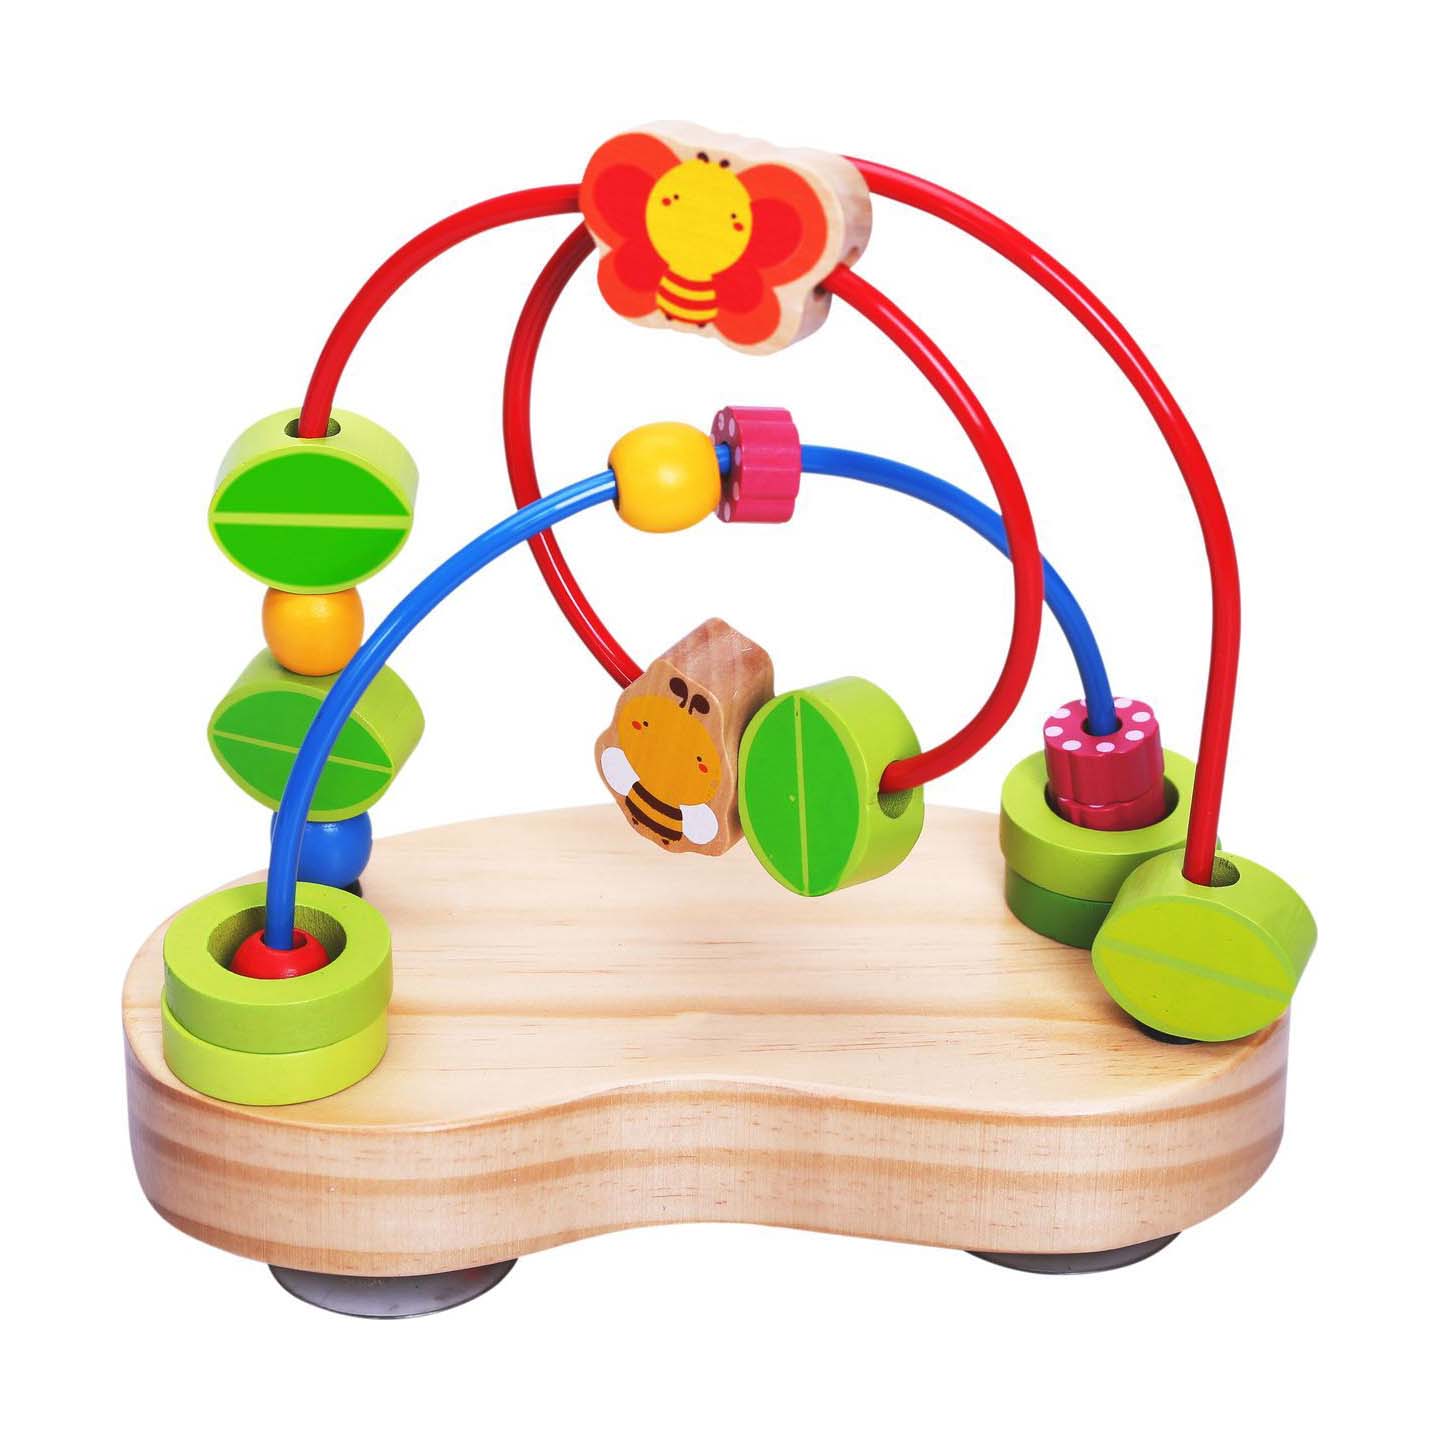 Развивающая игрушка 1 2 года. Сортер Vulpi деревянный. Игрушка Лабиринт деревянный для малышей. Развиввющие игрушки для малыш. Игрушки для детей от 1 года.